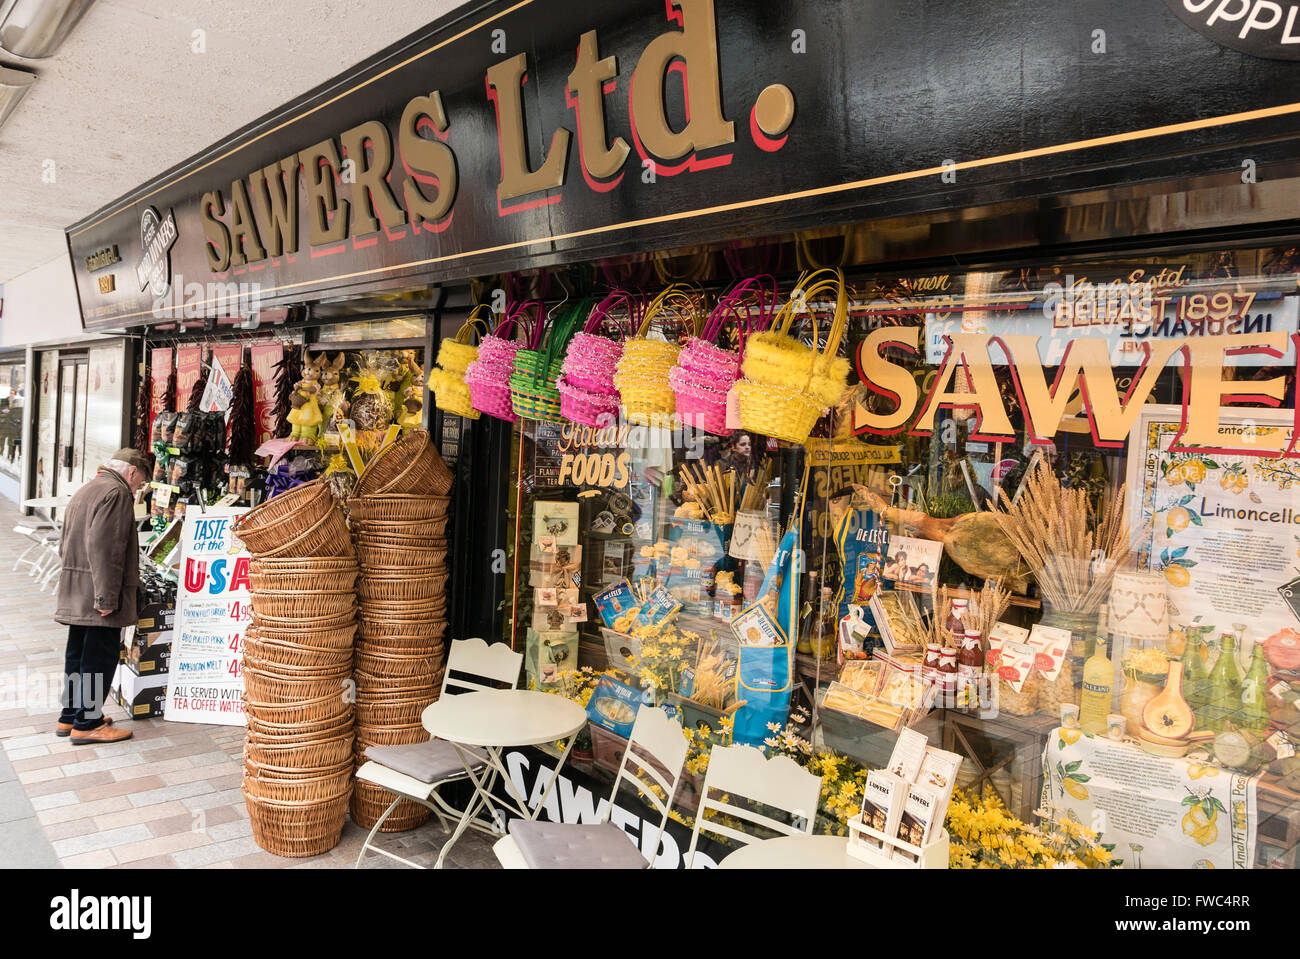 Sawers negozio delicatessen store a Belfast, specializzata in insolito, rare, e cibo esotico. Foto Stock